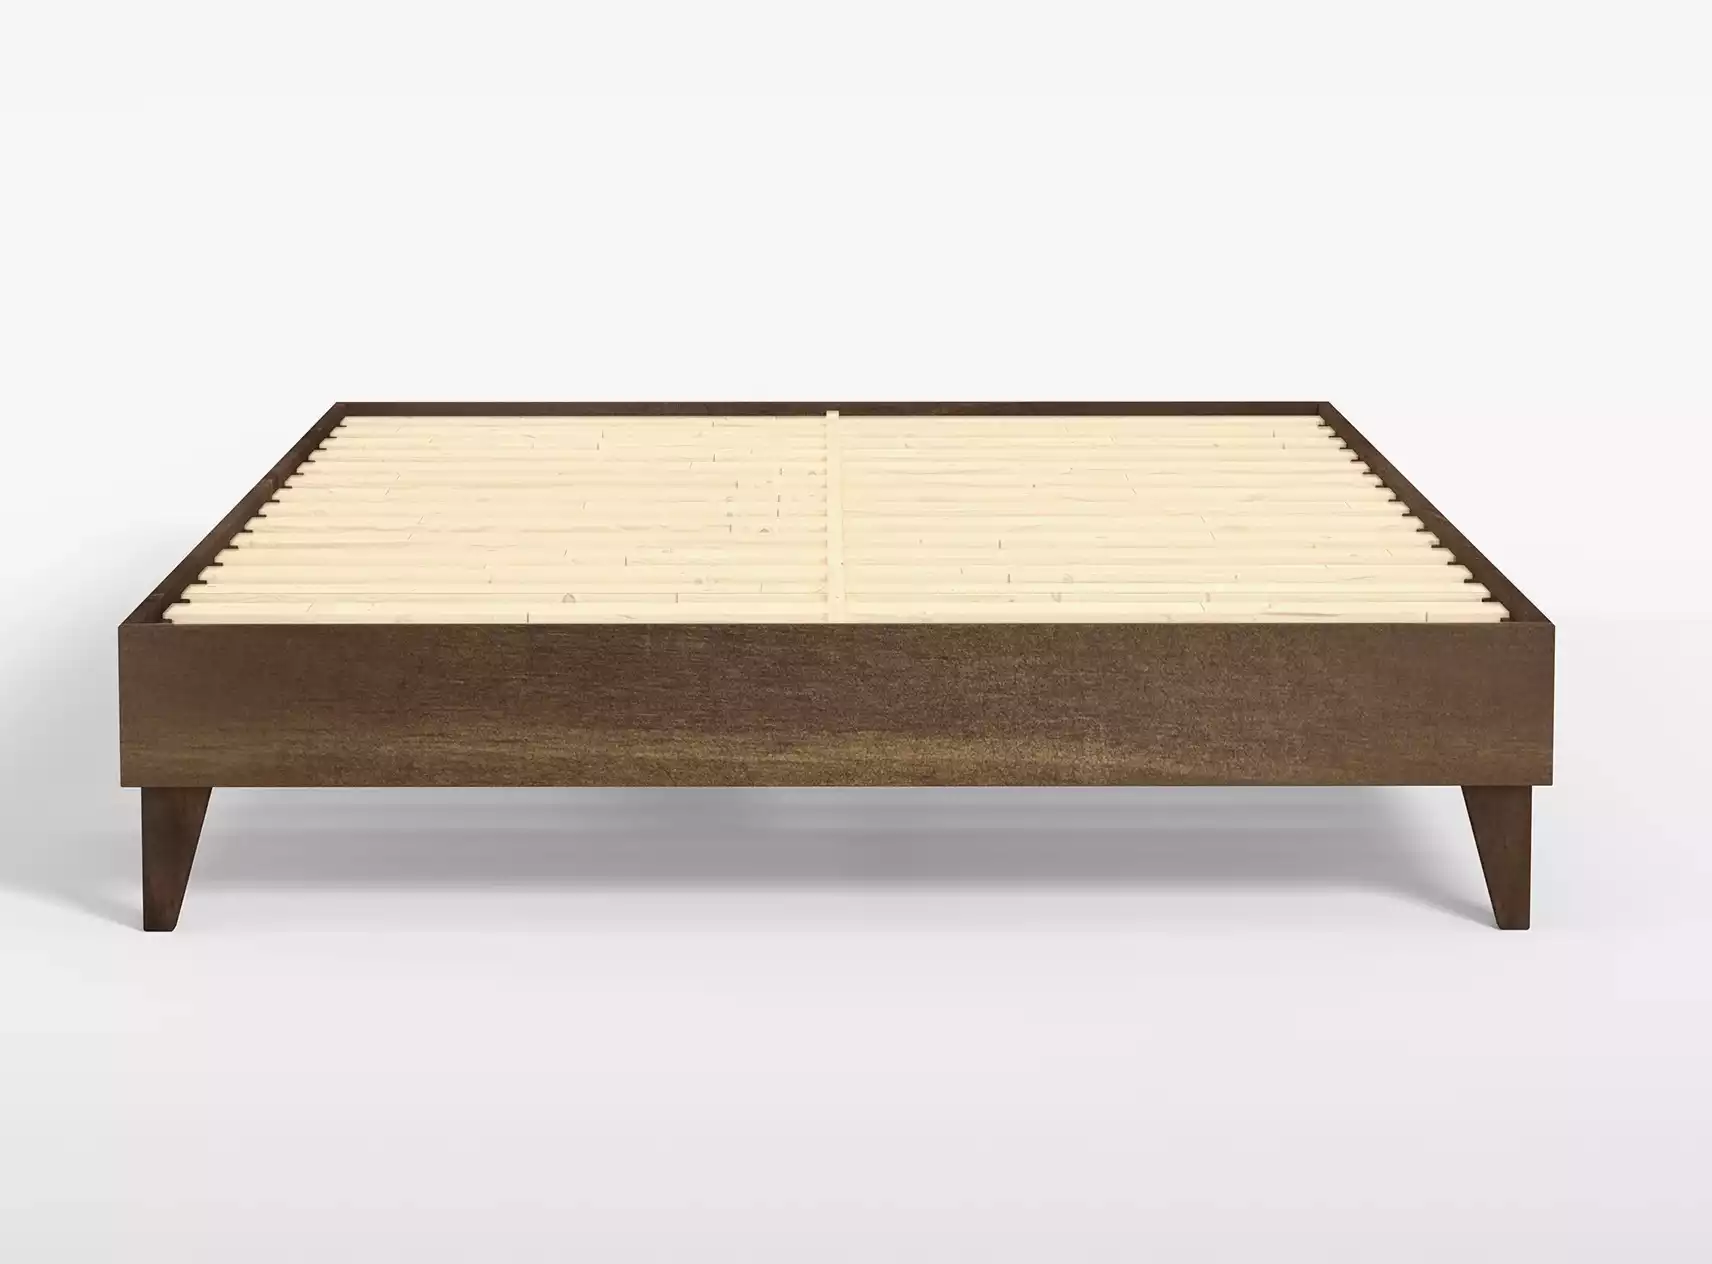 The Solid Wood Platform Bed